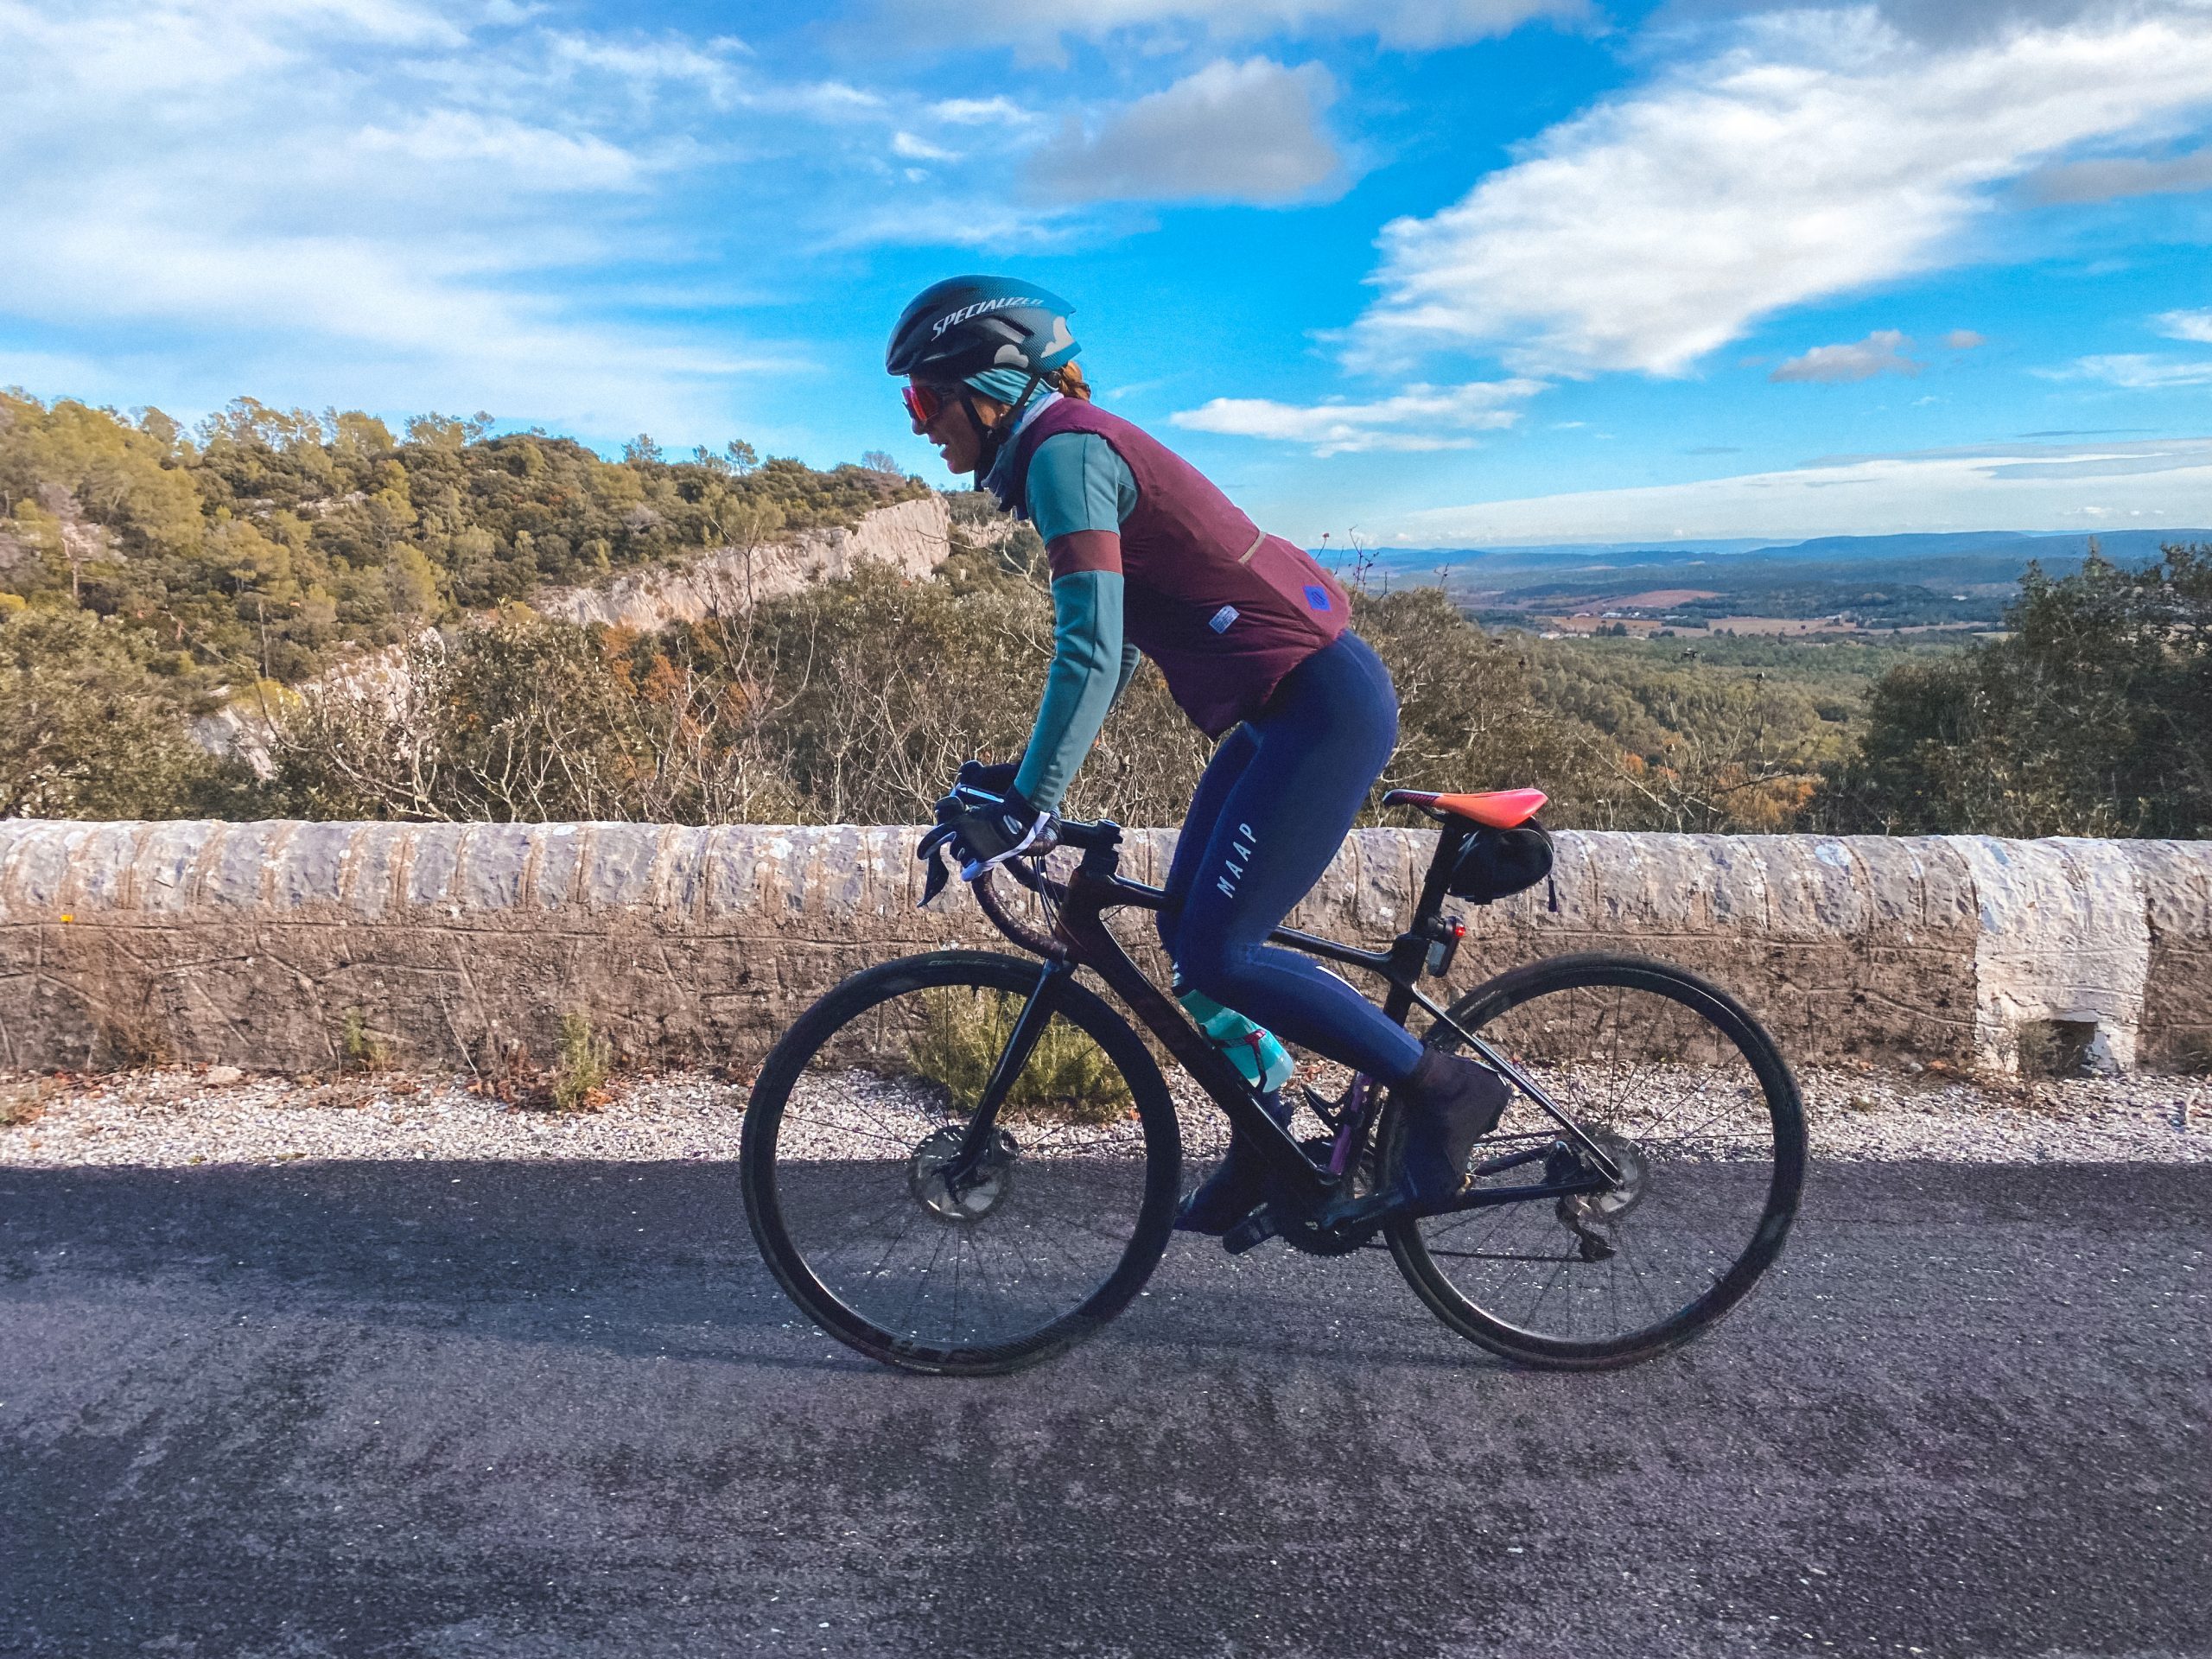 Cyclisme en hiver: Comment bien choisir sa (1ere) veste ? – Anne & Dubndidu